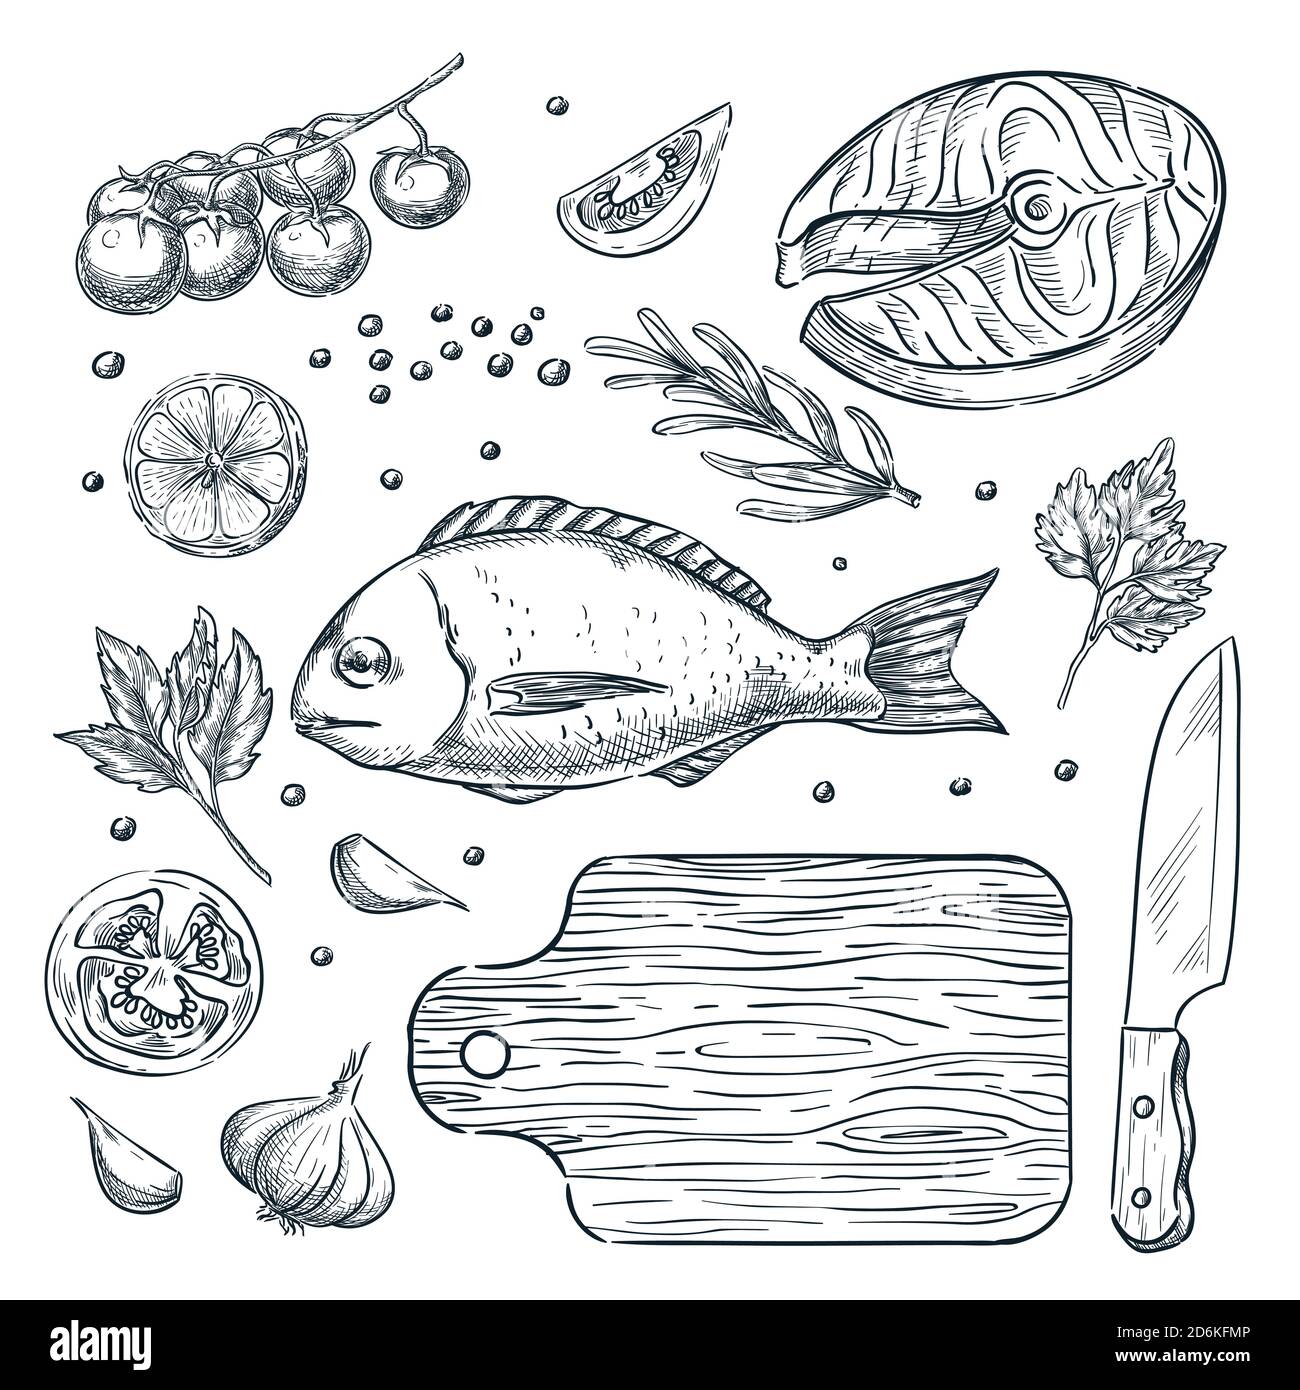 Cucina pesce dorado e bistecca di salmone, illustrazione vettoriale schizzo. Set di ingredienti alimentari, verdure, spezie, estratti a mano e isolati. Ristorante di pesce m Illustrazione Vettoriale